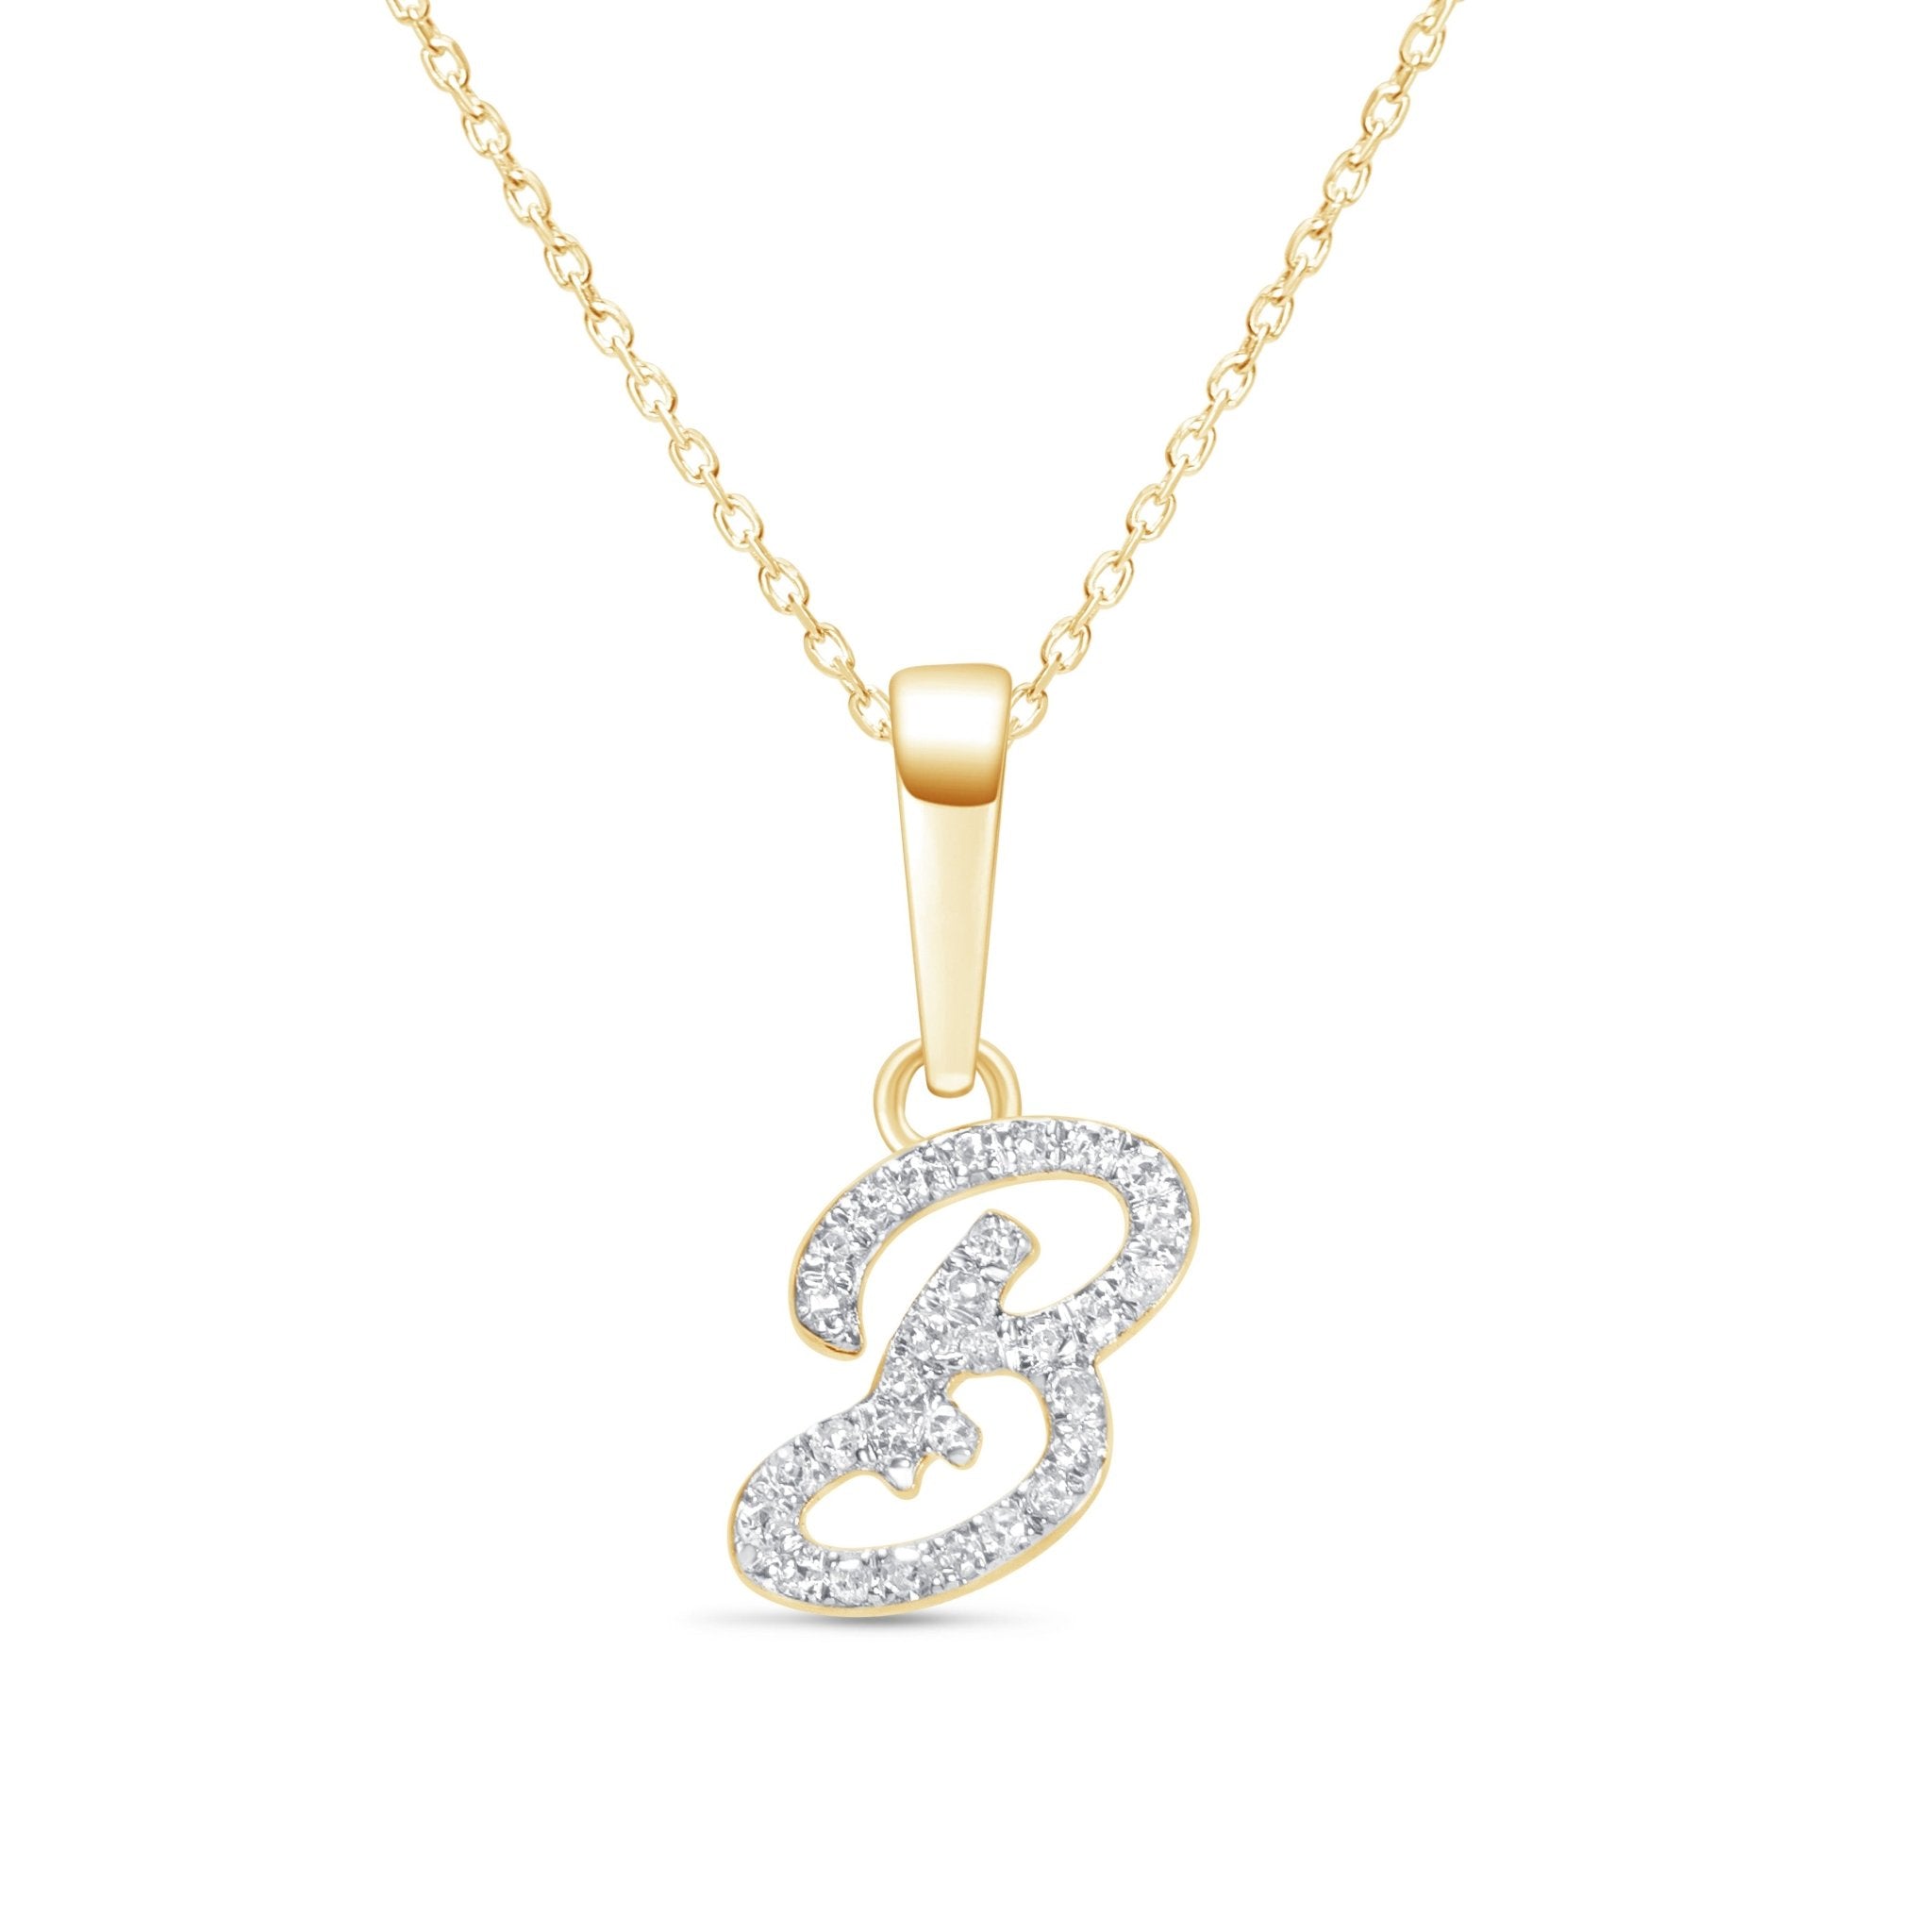 Cursive Diamond Initial Necklace - B Necklaces Estella Collection #product_description# 18557 14k Diamond Gemstone #tag4# #tag5# #tag6# #tag7# #tag8# #tag9# #tag10# 14k Yellow Gold